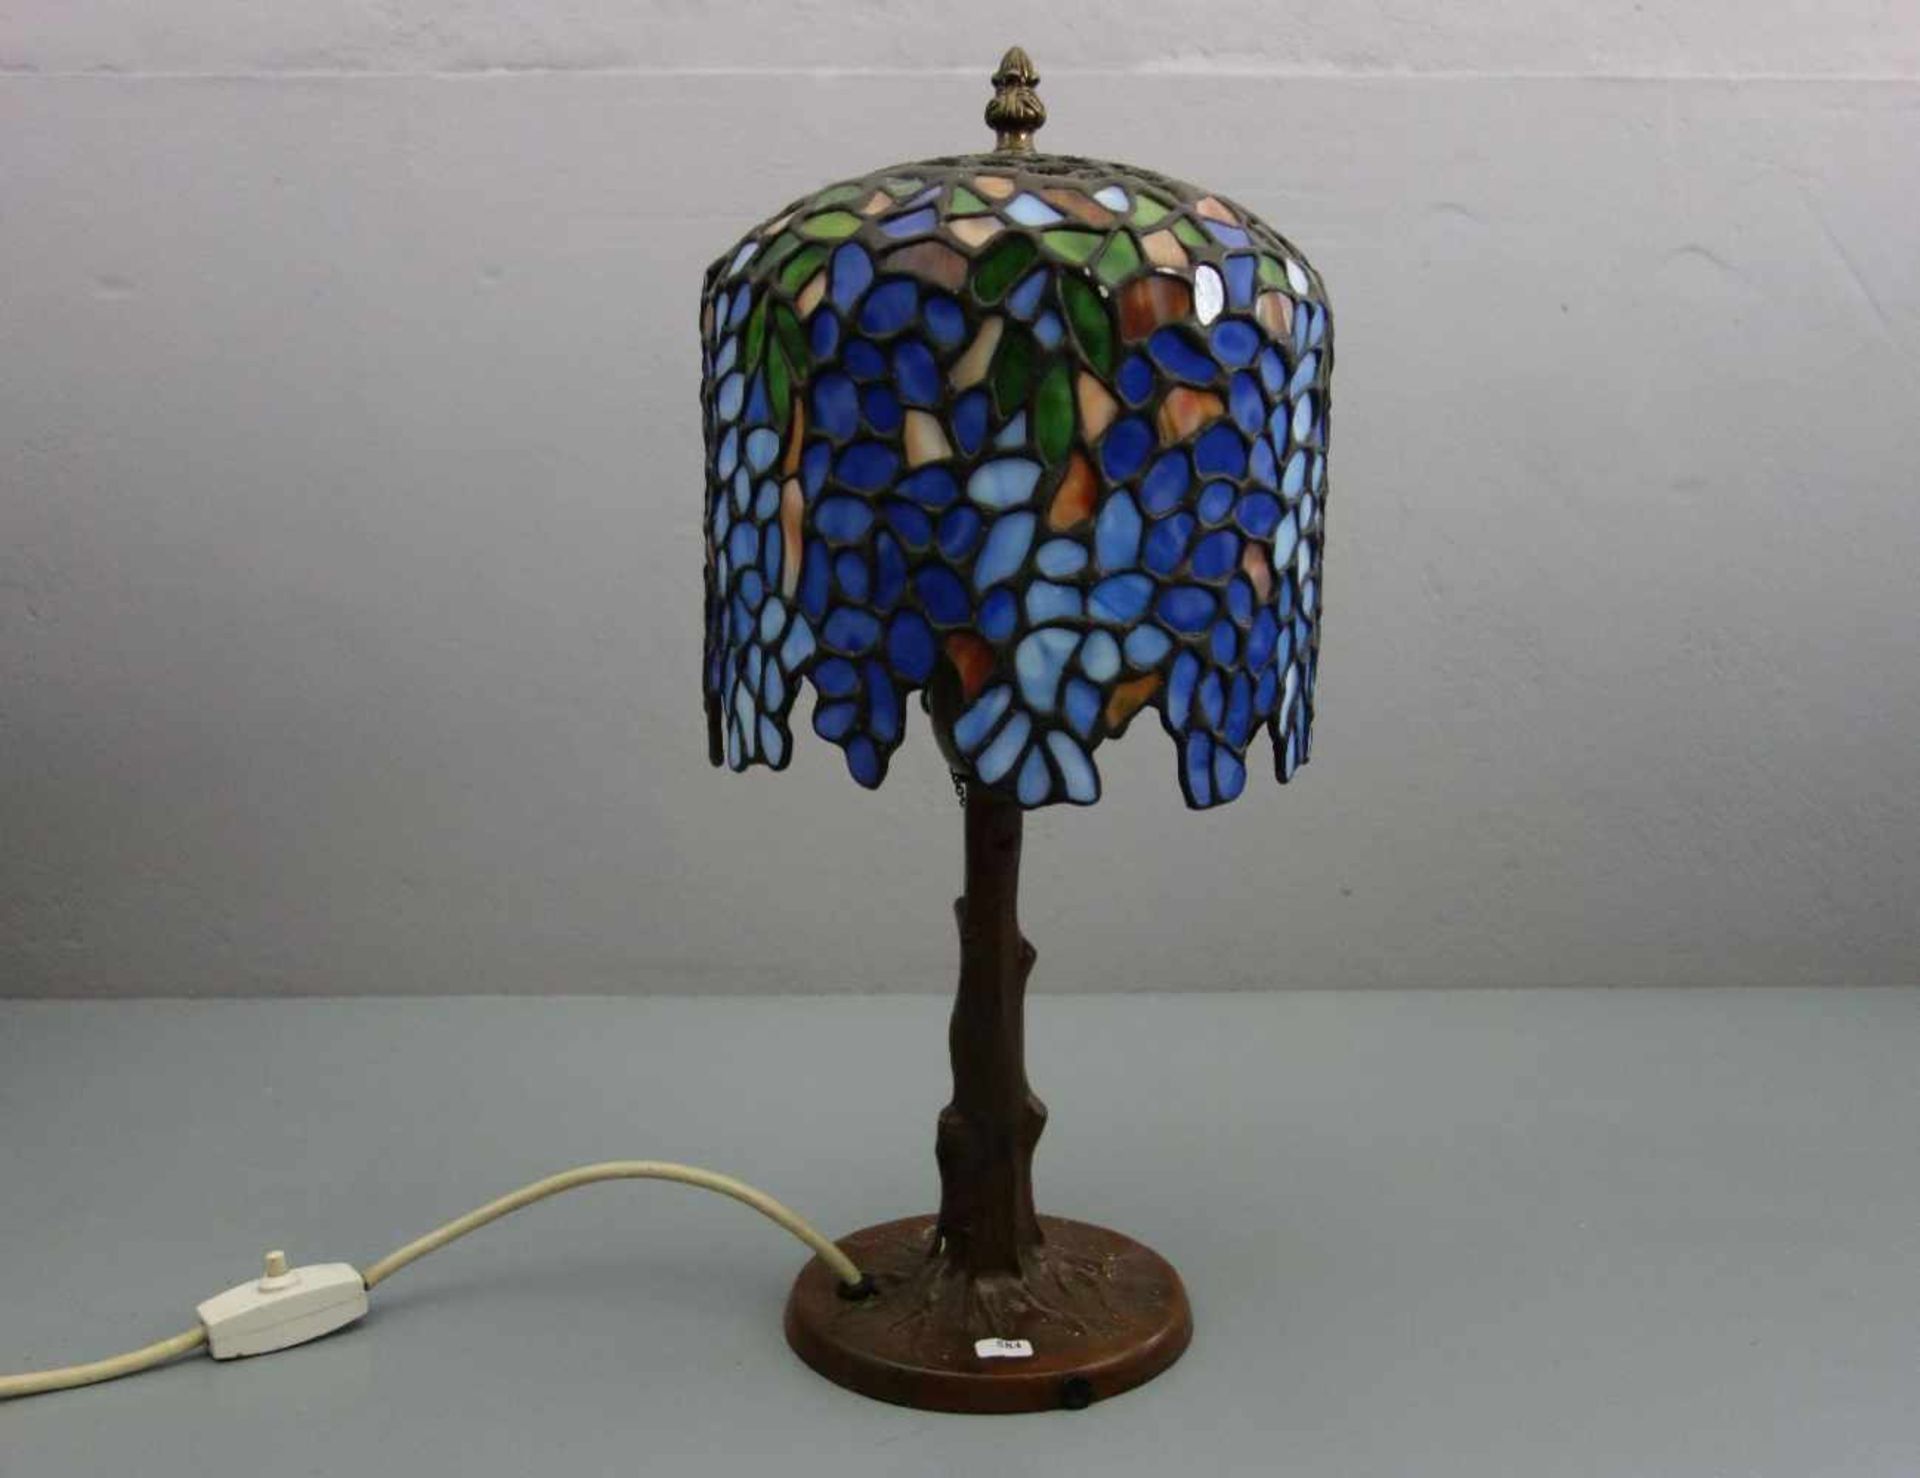 LAMPE / TISCHLAMPE im Stil einer Tiffany-Lampe, bronzierter Fuß im Form eines Baumstammes mit